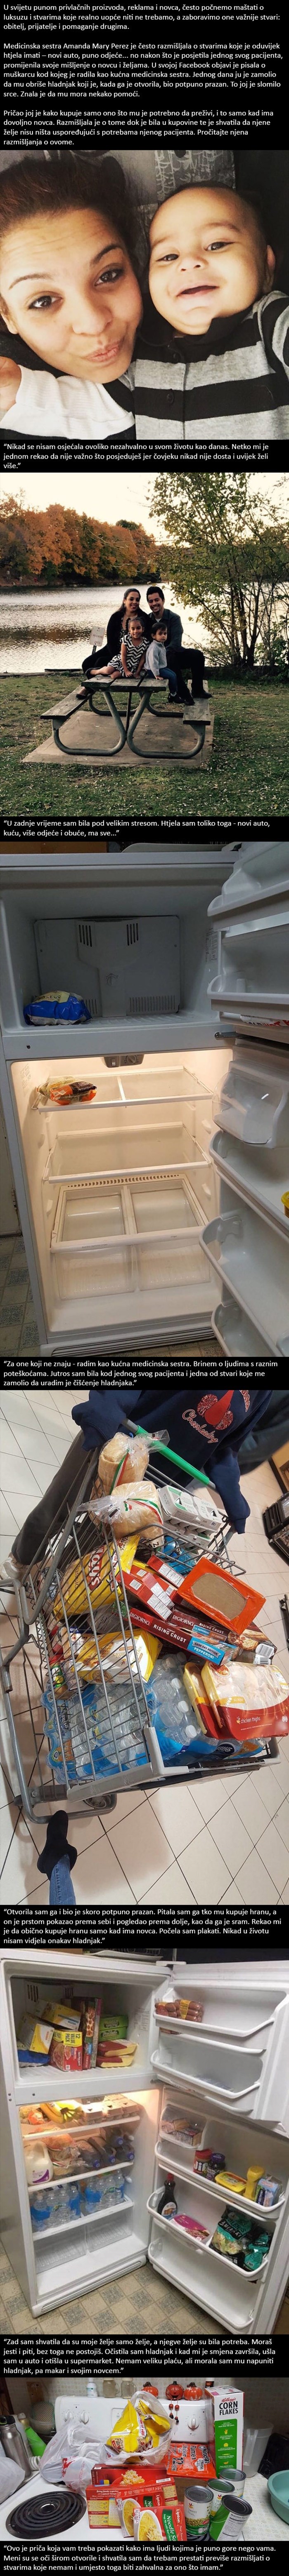 Pacijent je medicinsku sestru zamolio da očisti hladnjak. Kad ga je otvorila, bio je potpuno prazan!